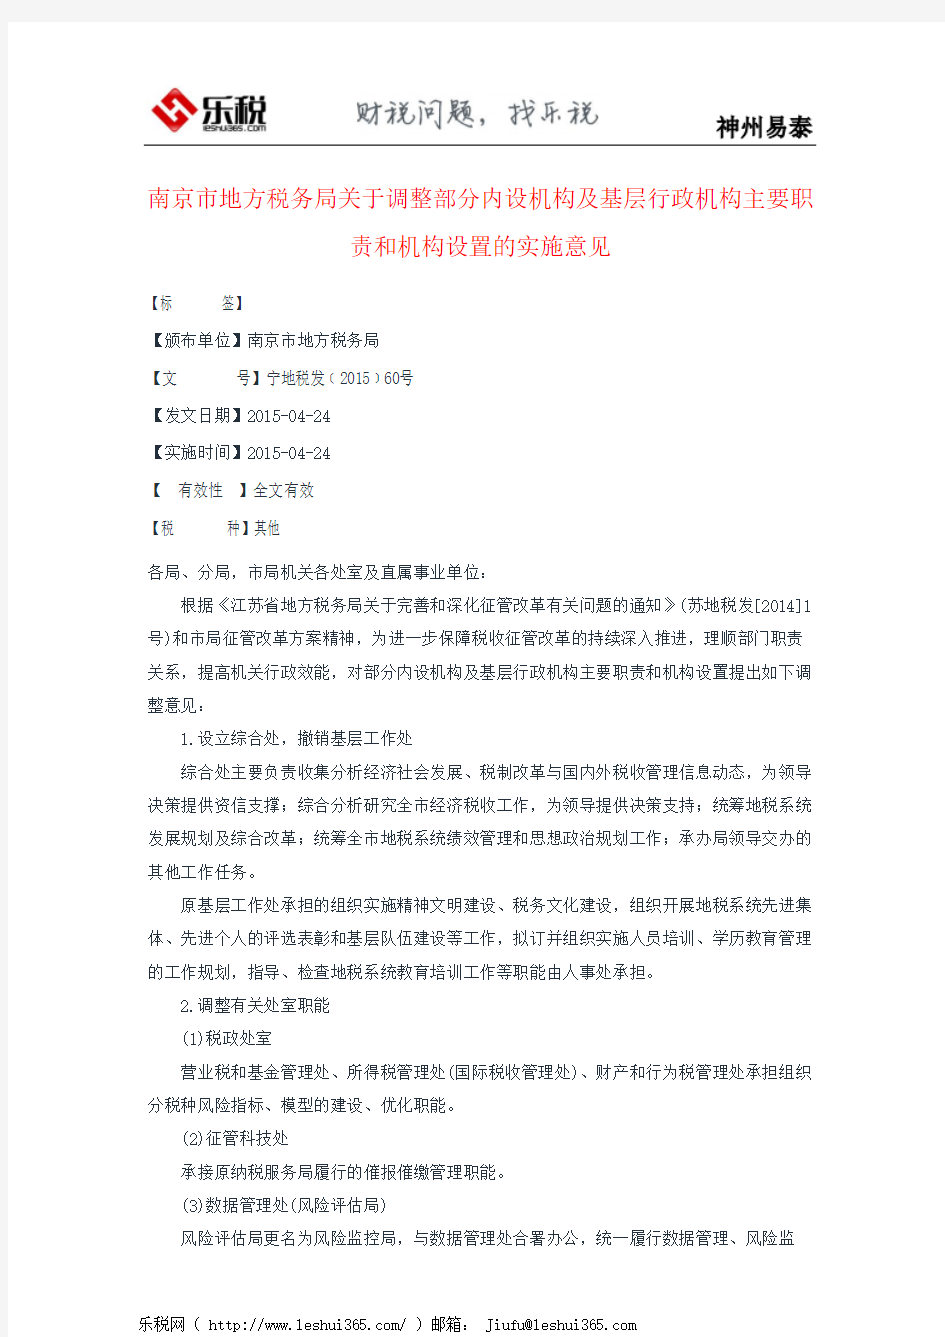 南京市地方税务局关于调整部分内设机构及基层行政机构主要职责和